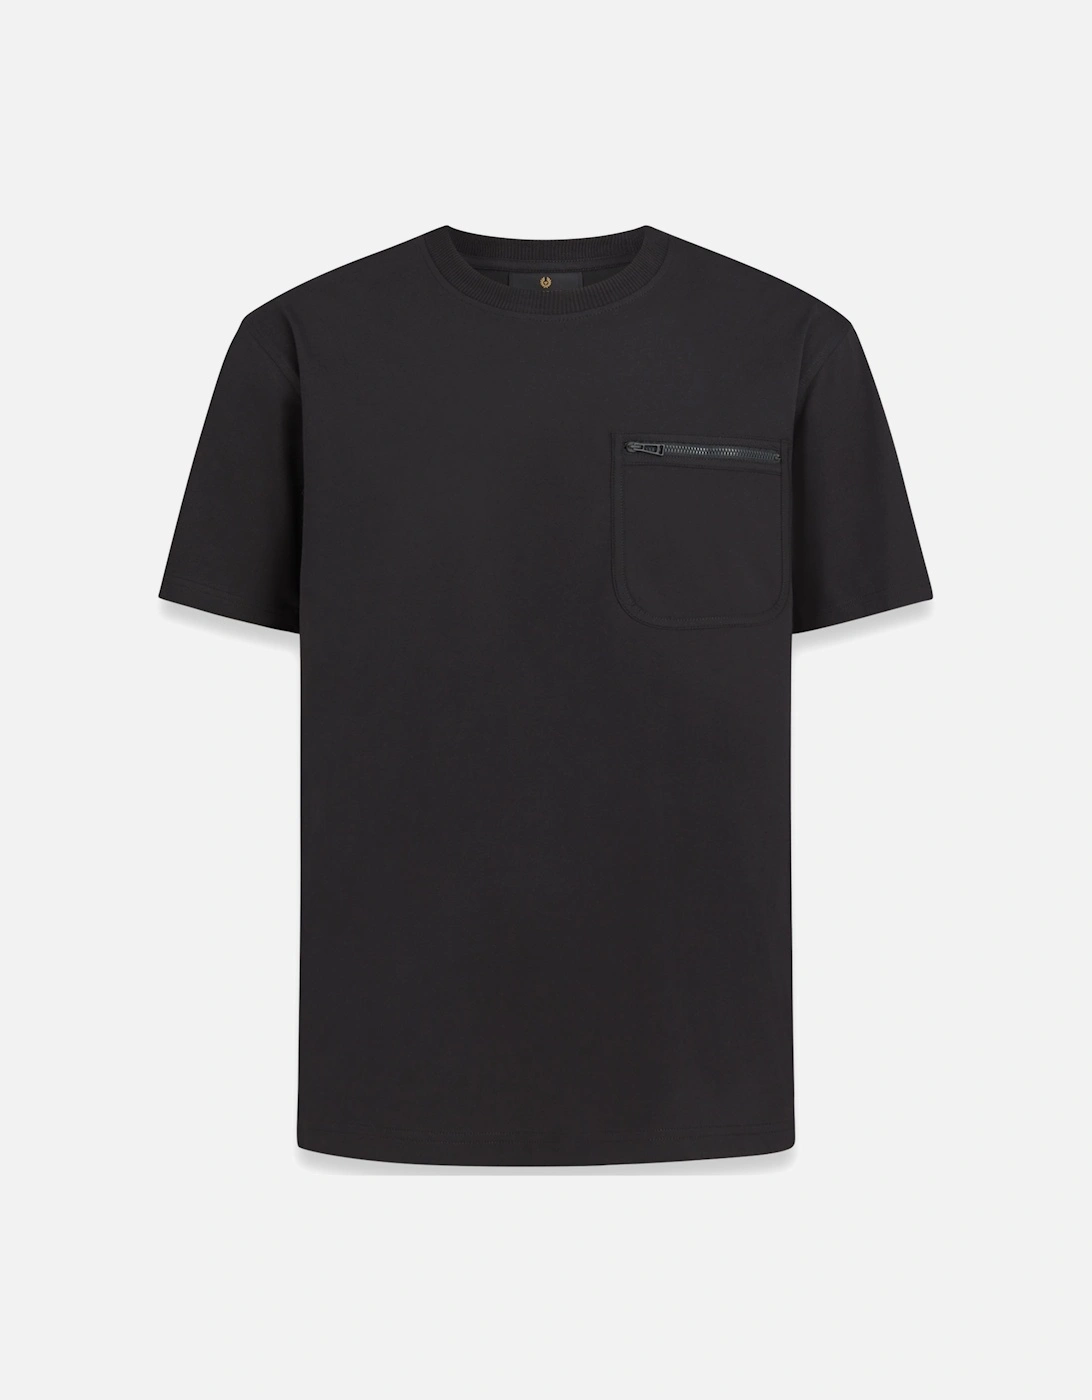 Transit T-shirt Black, 6 of 5